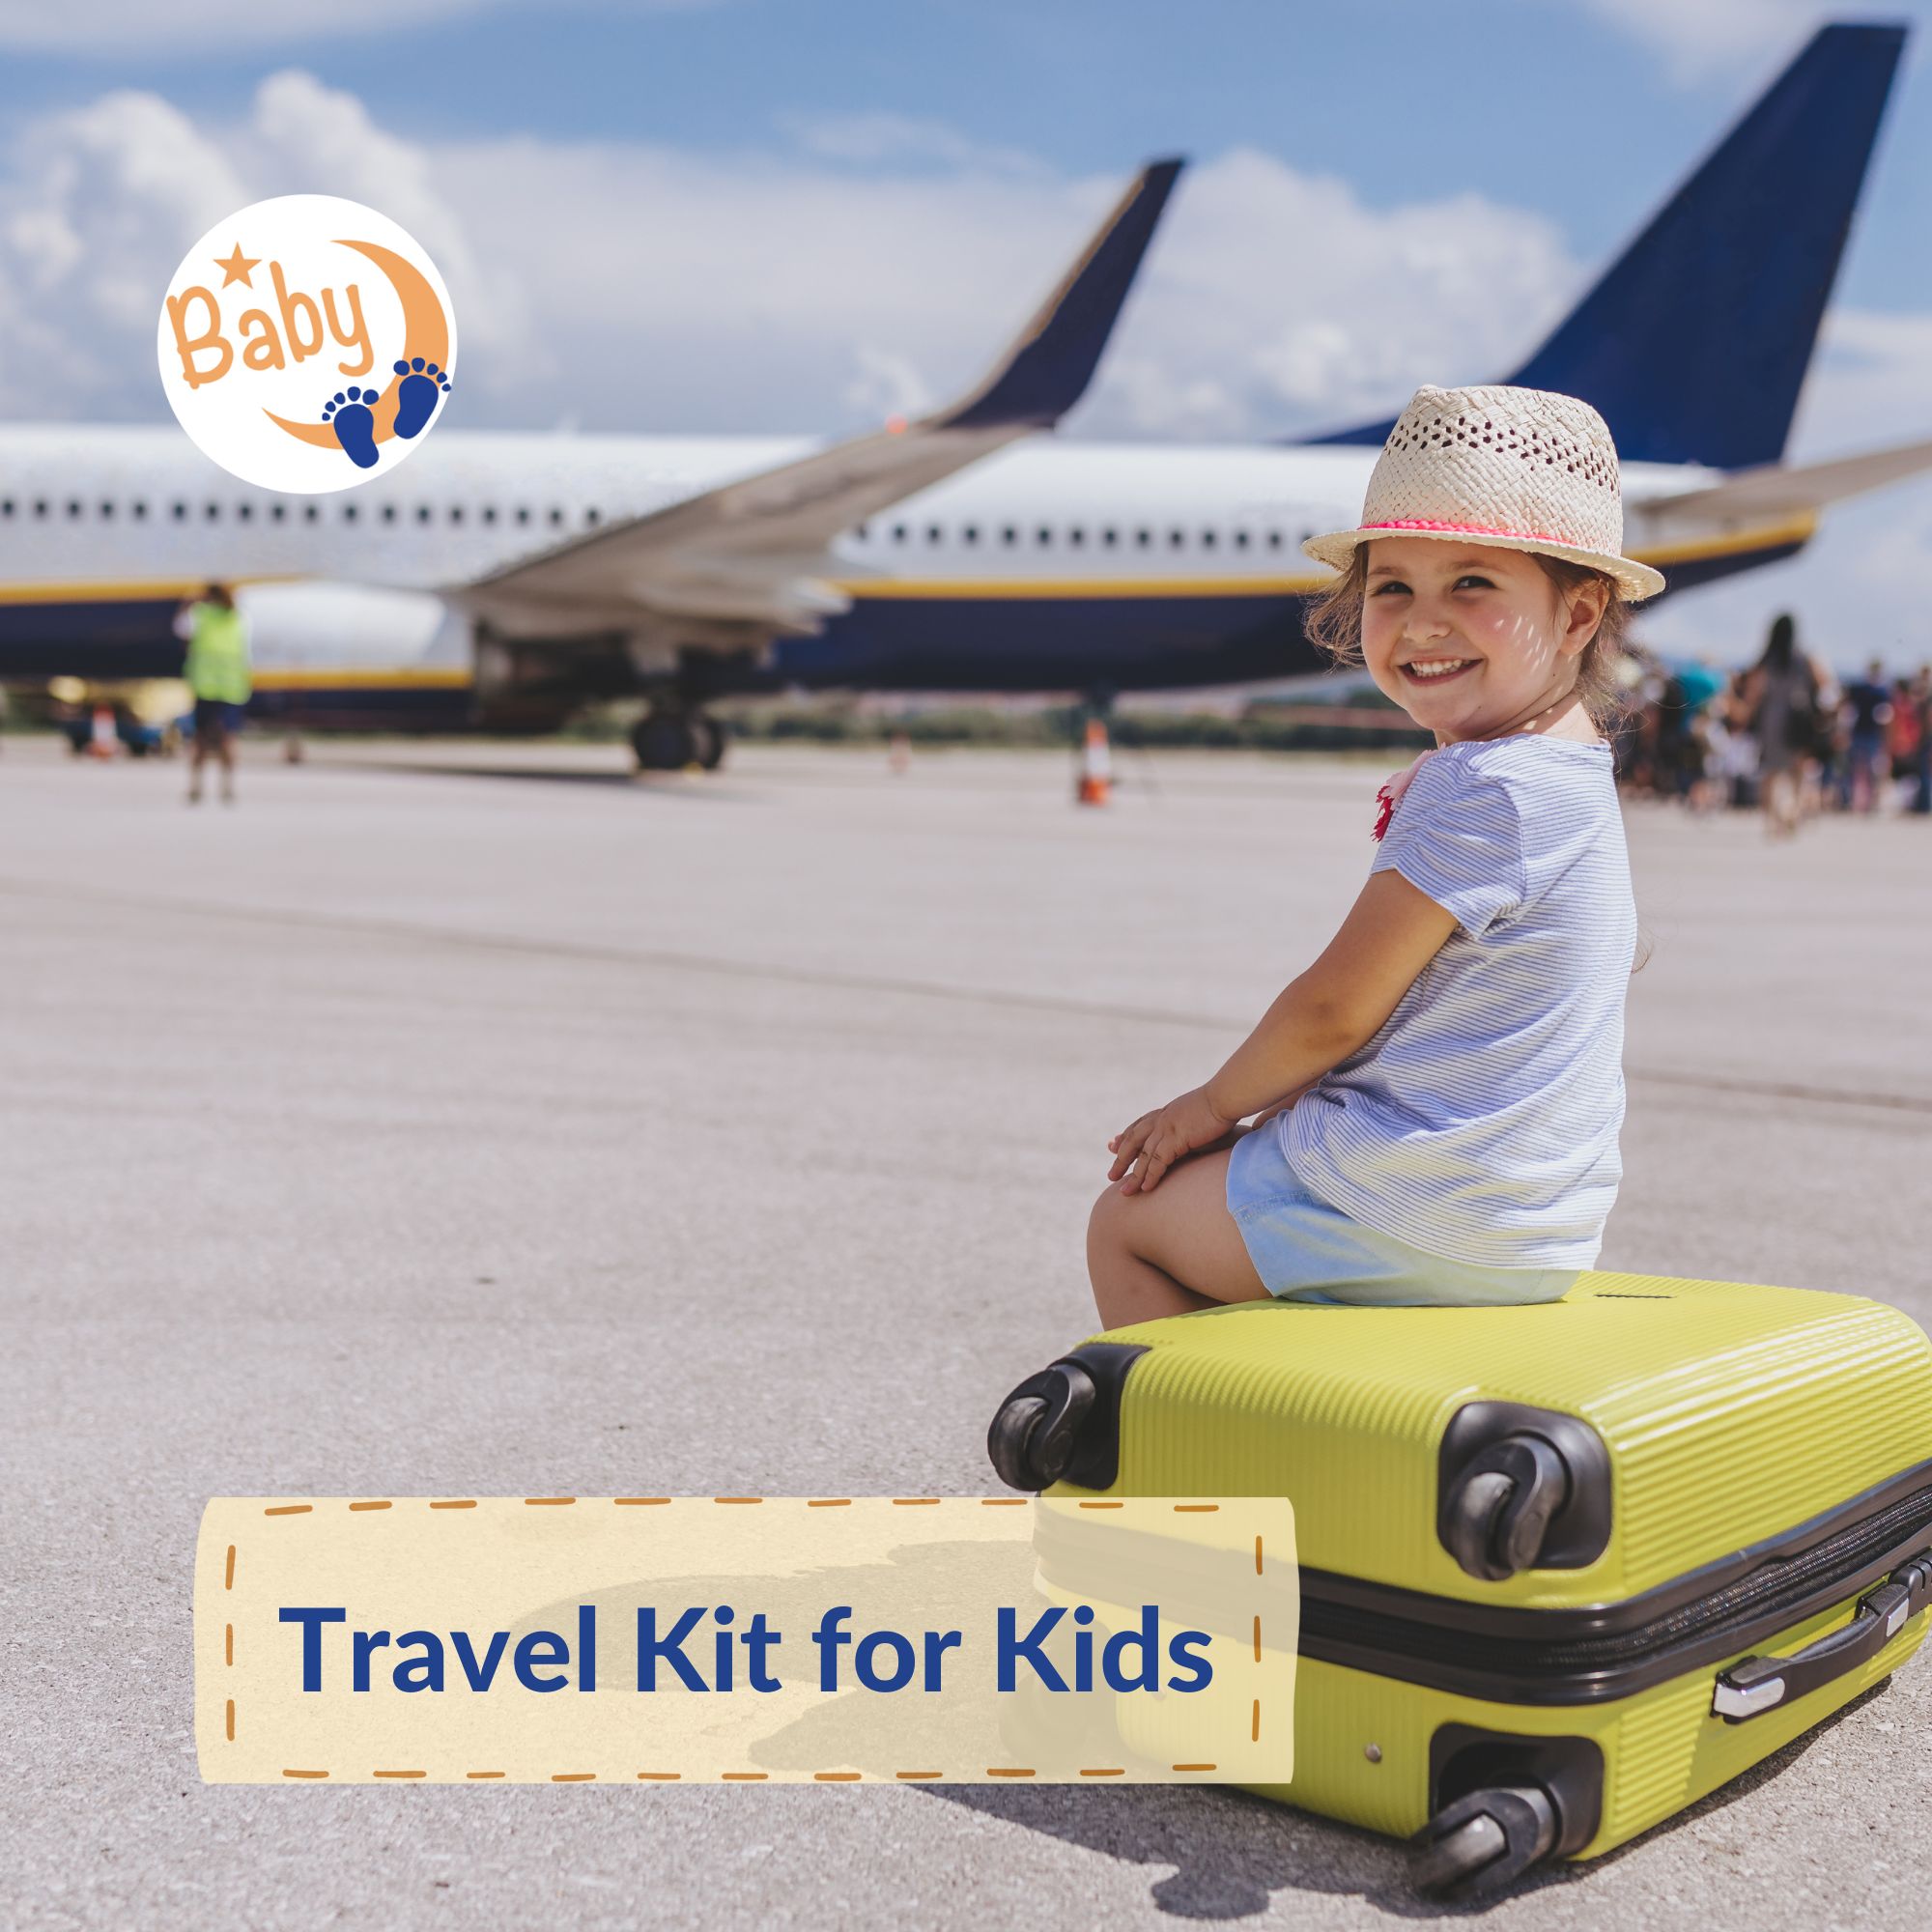 Travel Kit for Kids